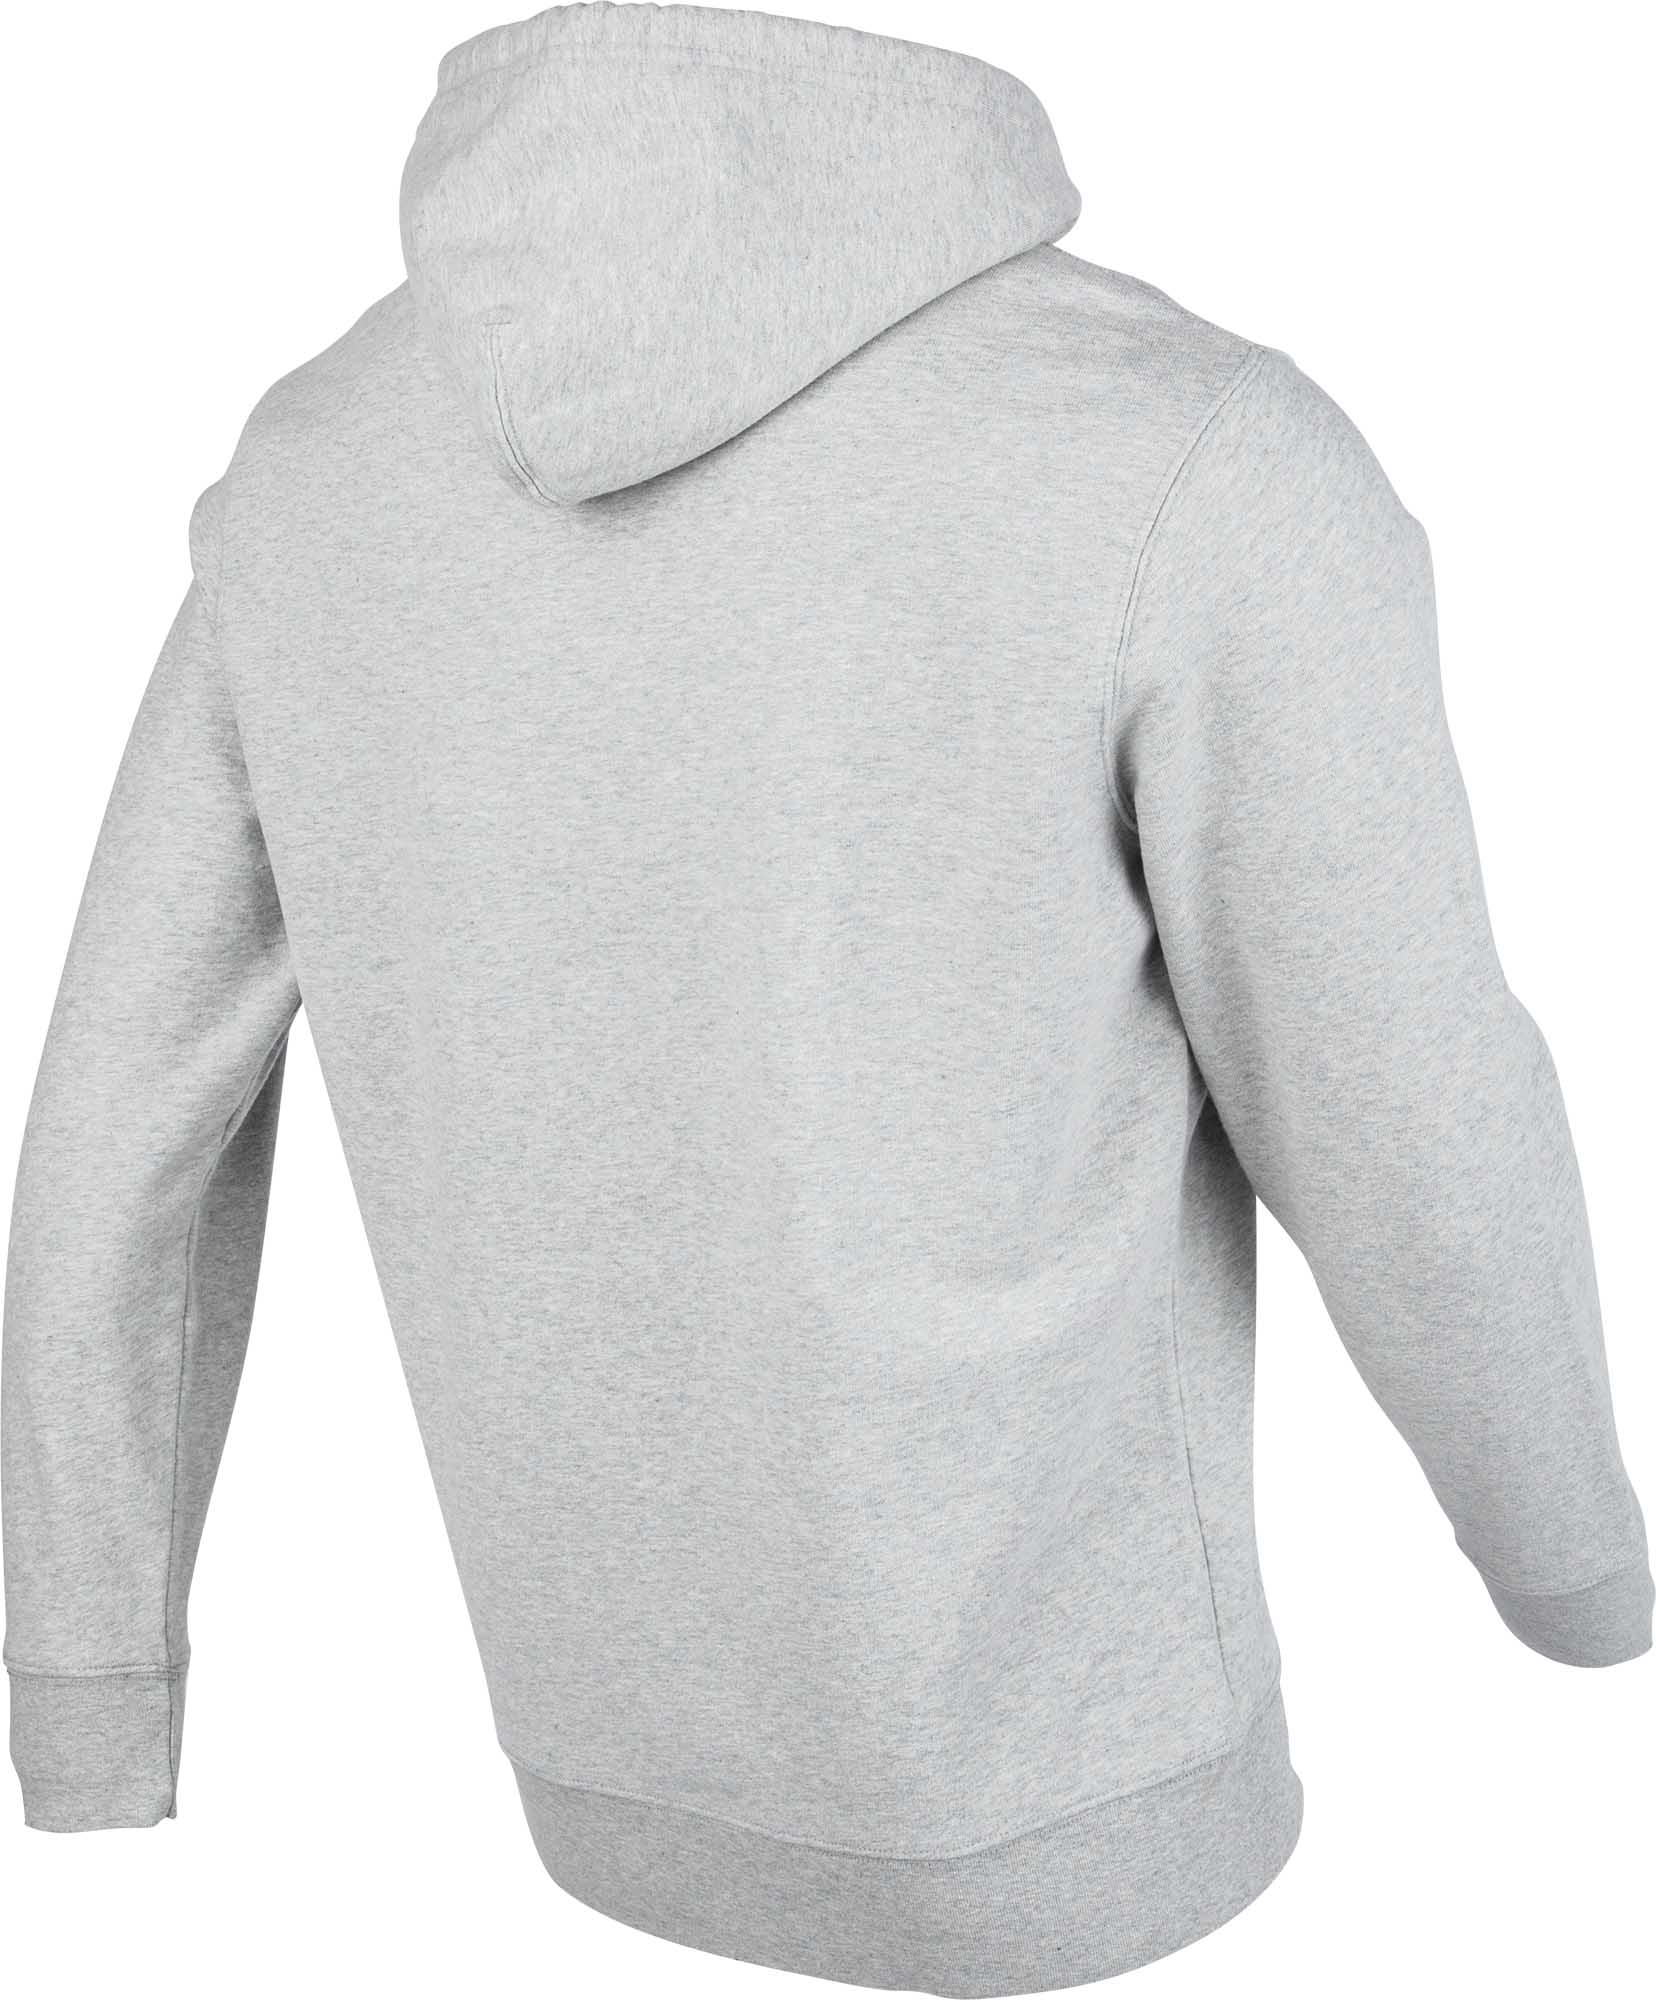 Men’s hoodie